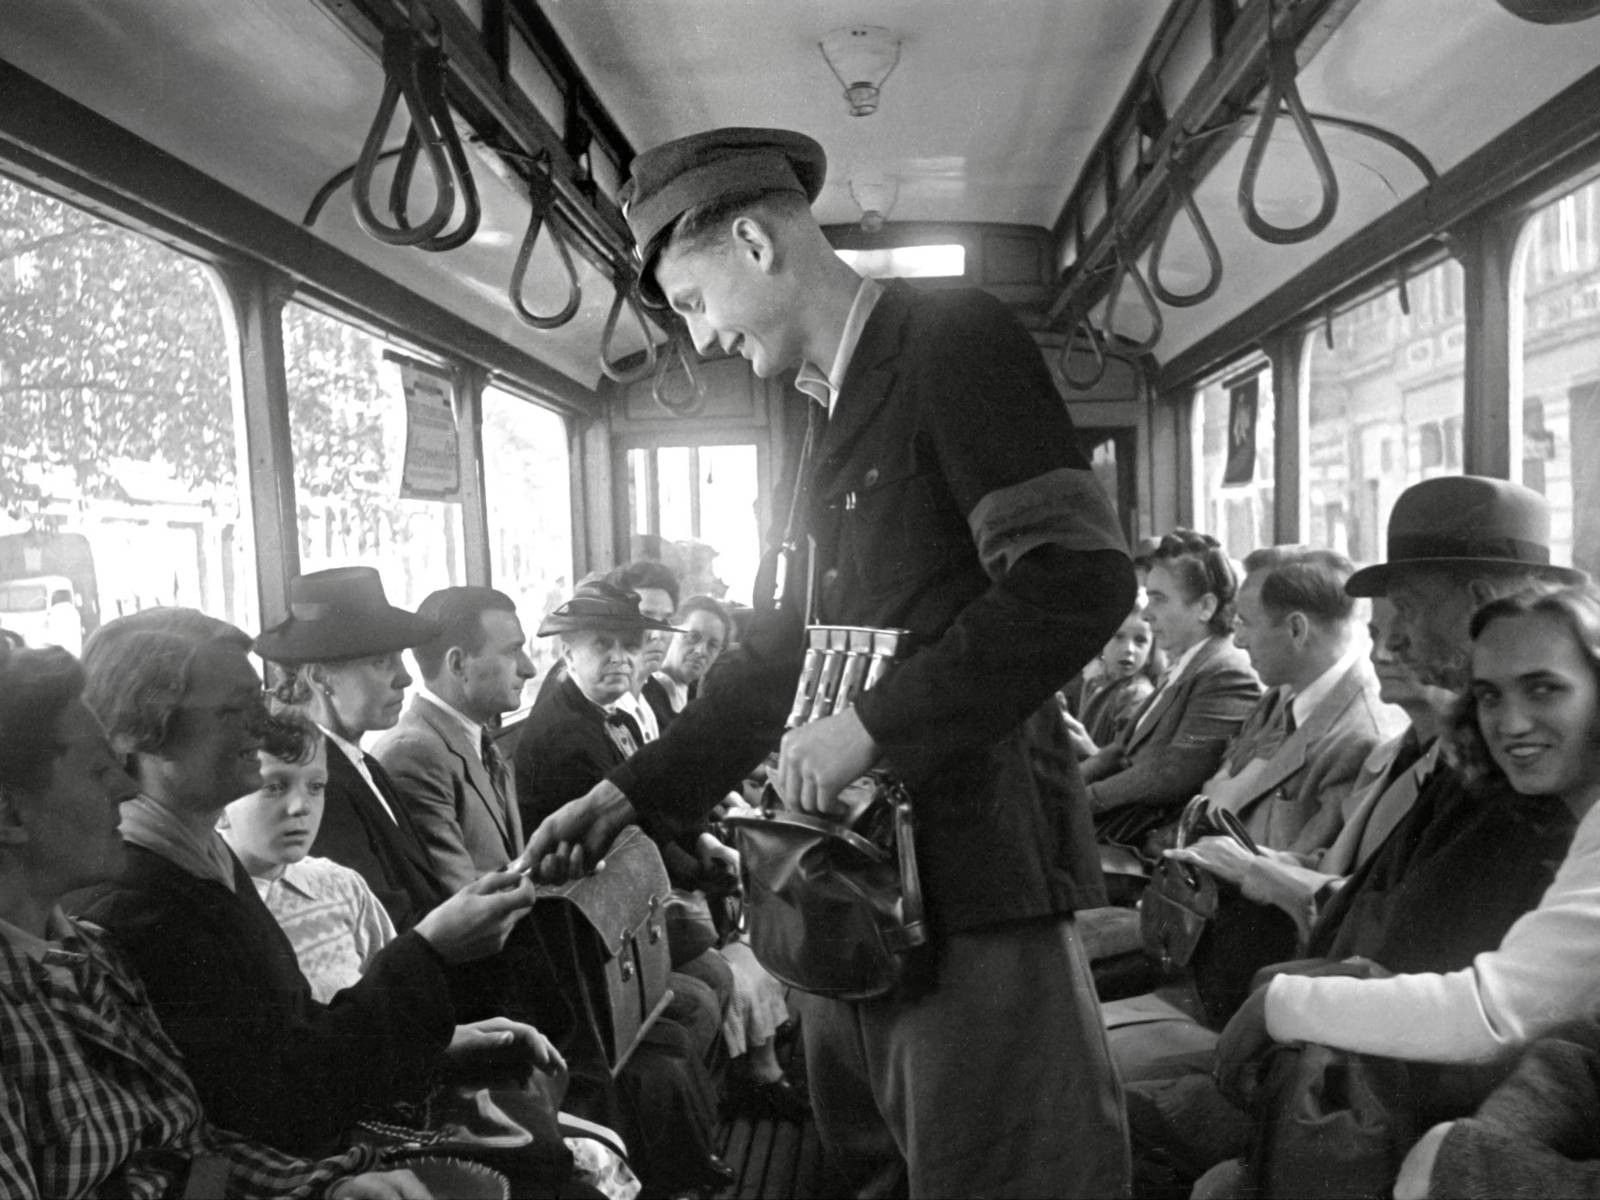 Schwarz-Weiß-Fotografie: Ein Mann trägt eine Dienstmütze und verkauft Fahrscheine gegen Bargeld in einer Straßenbahn.